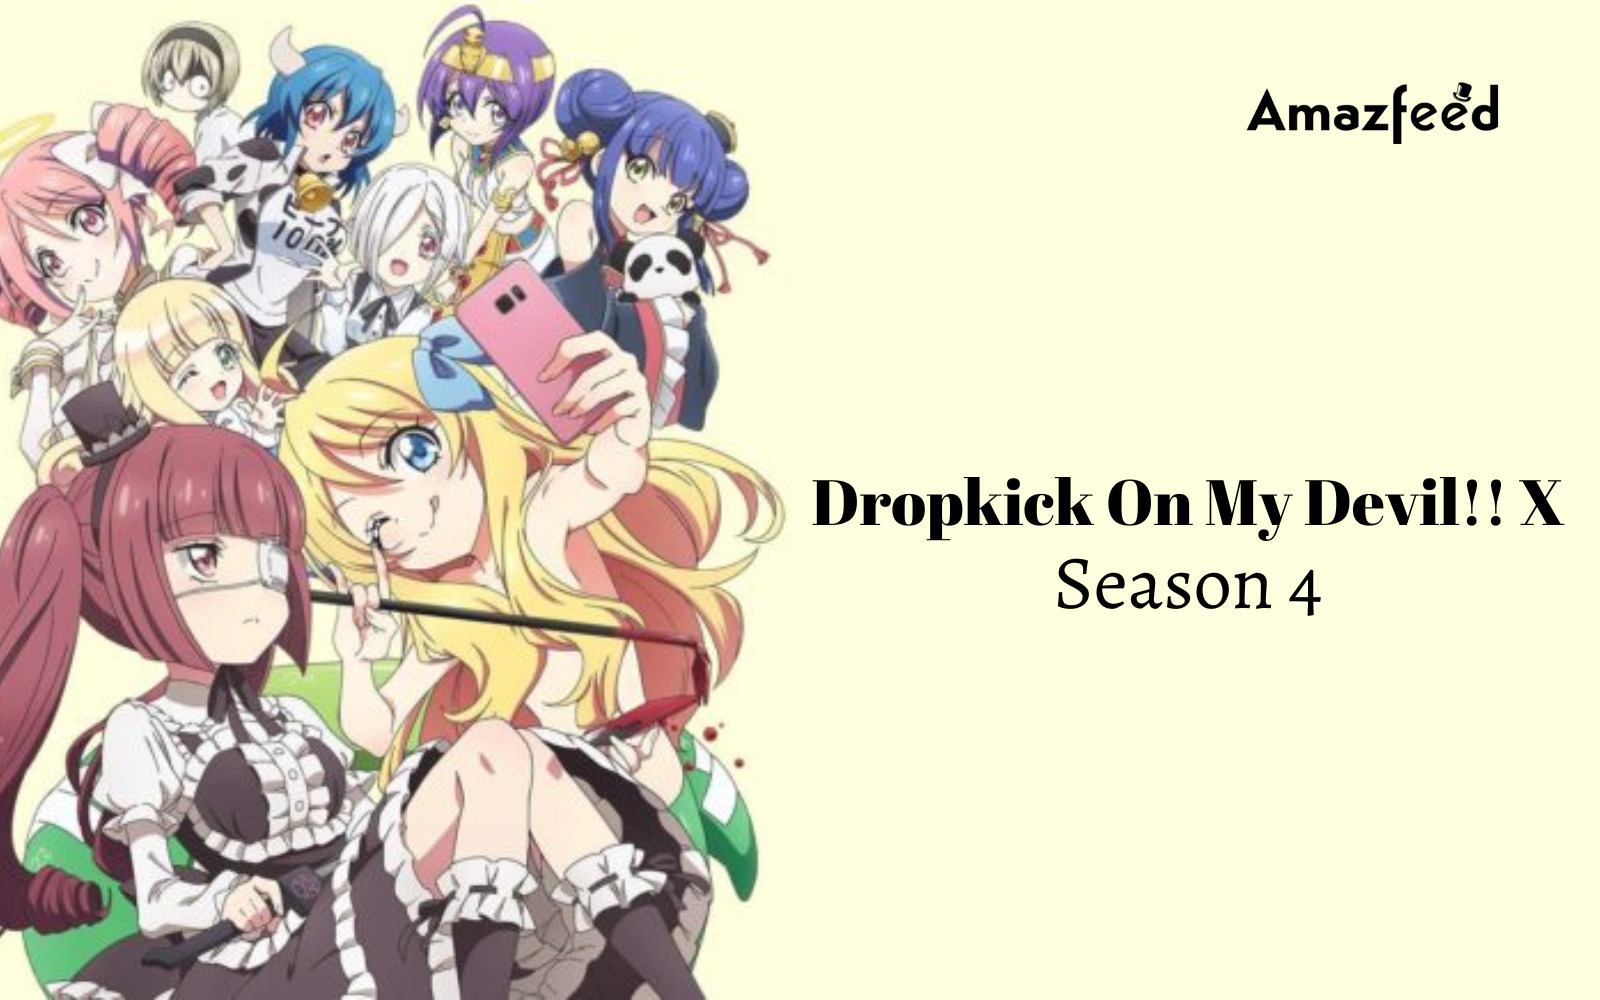 Dropkick On My Devil!! X Season 4 Release Date